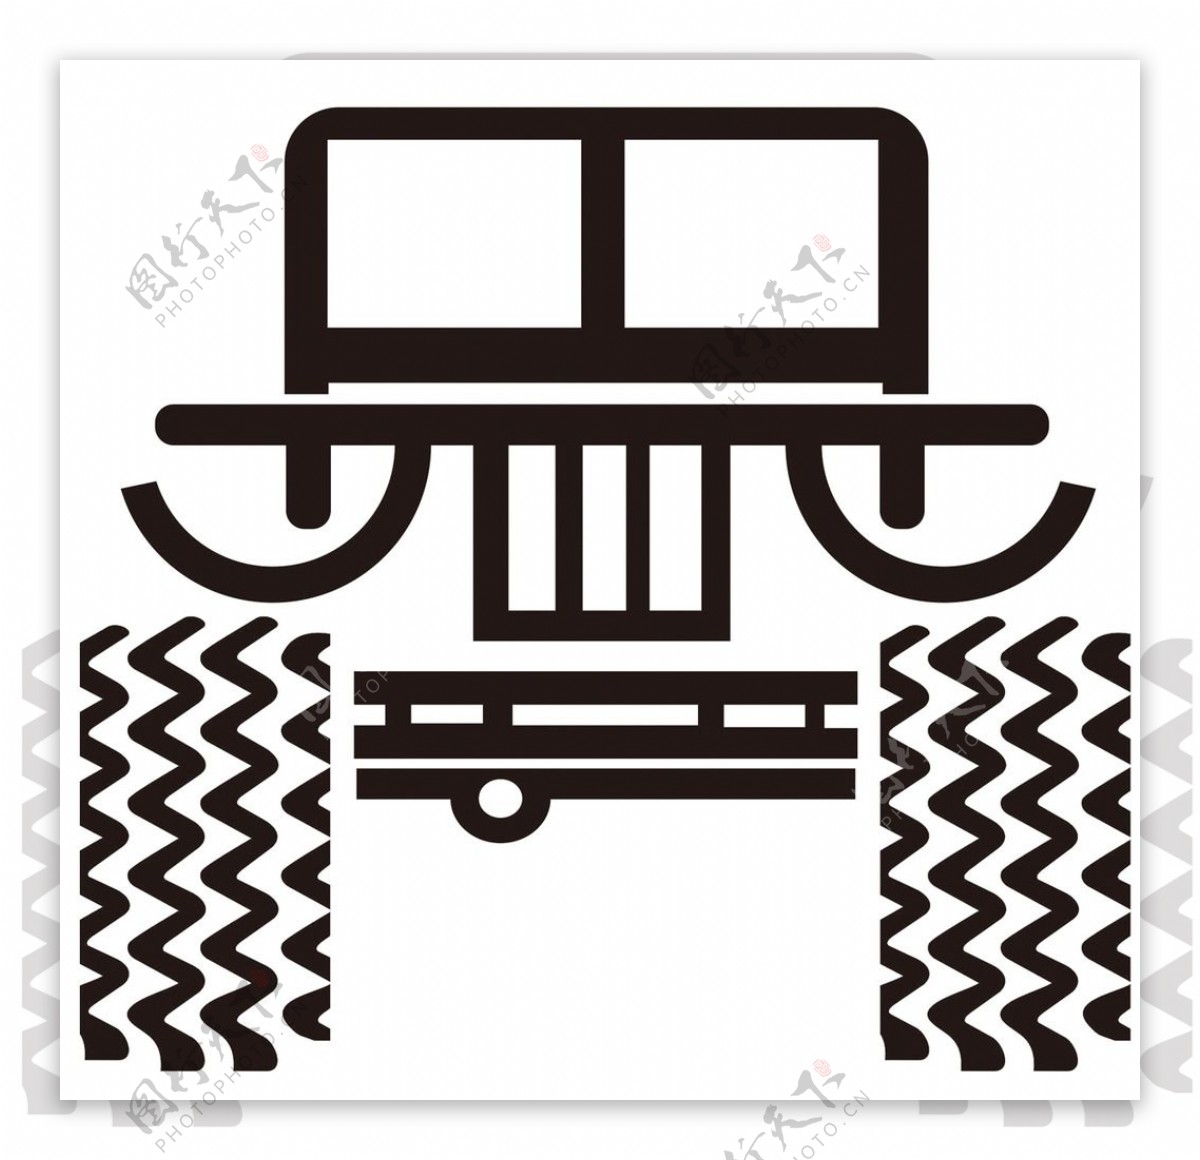 吉普车logo